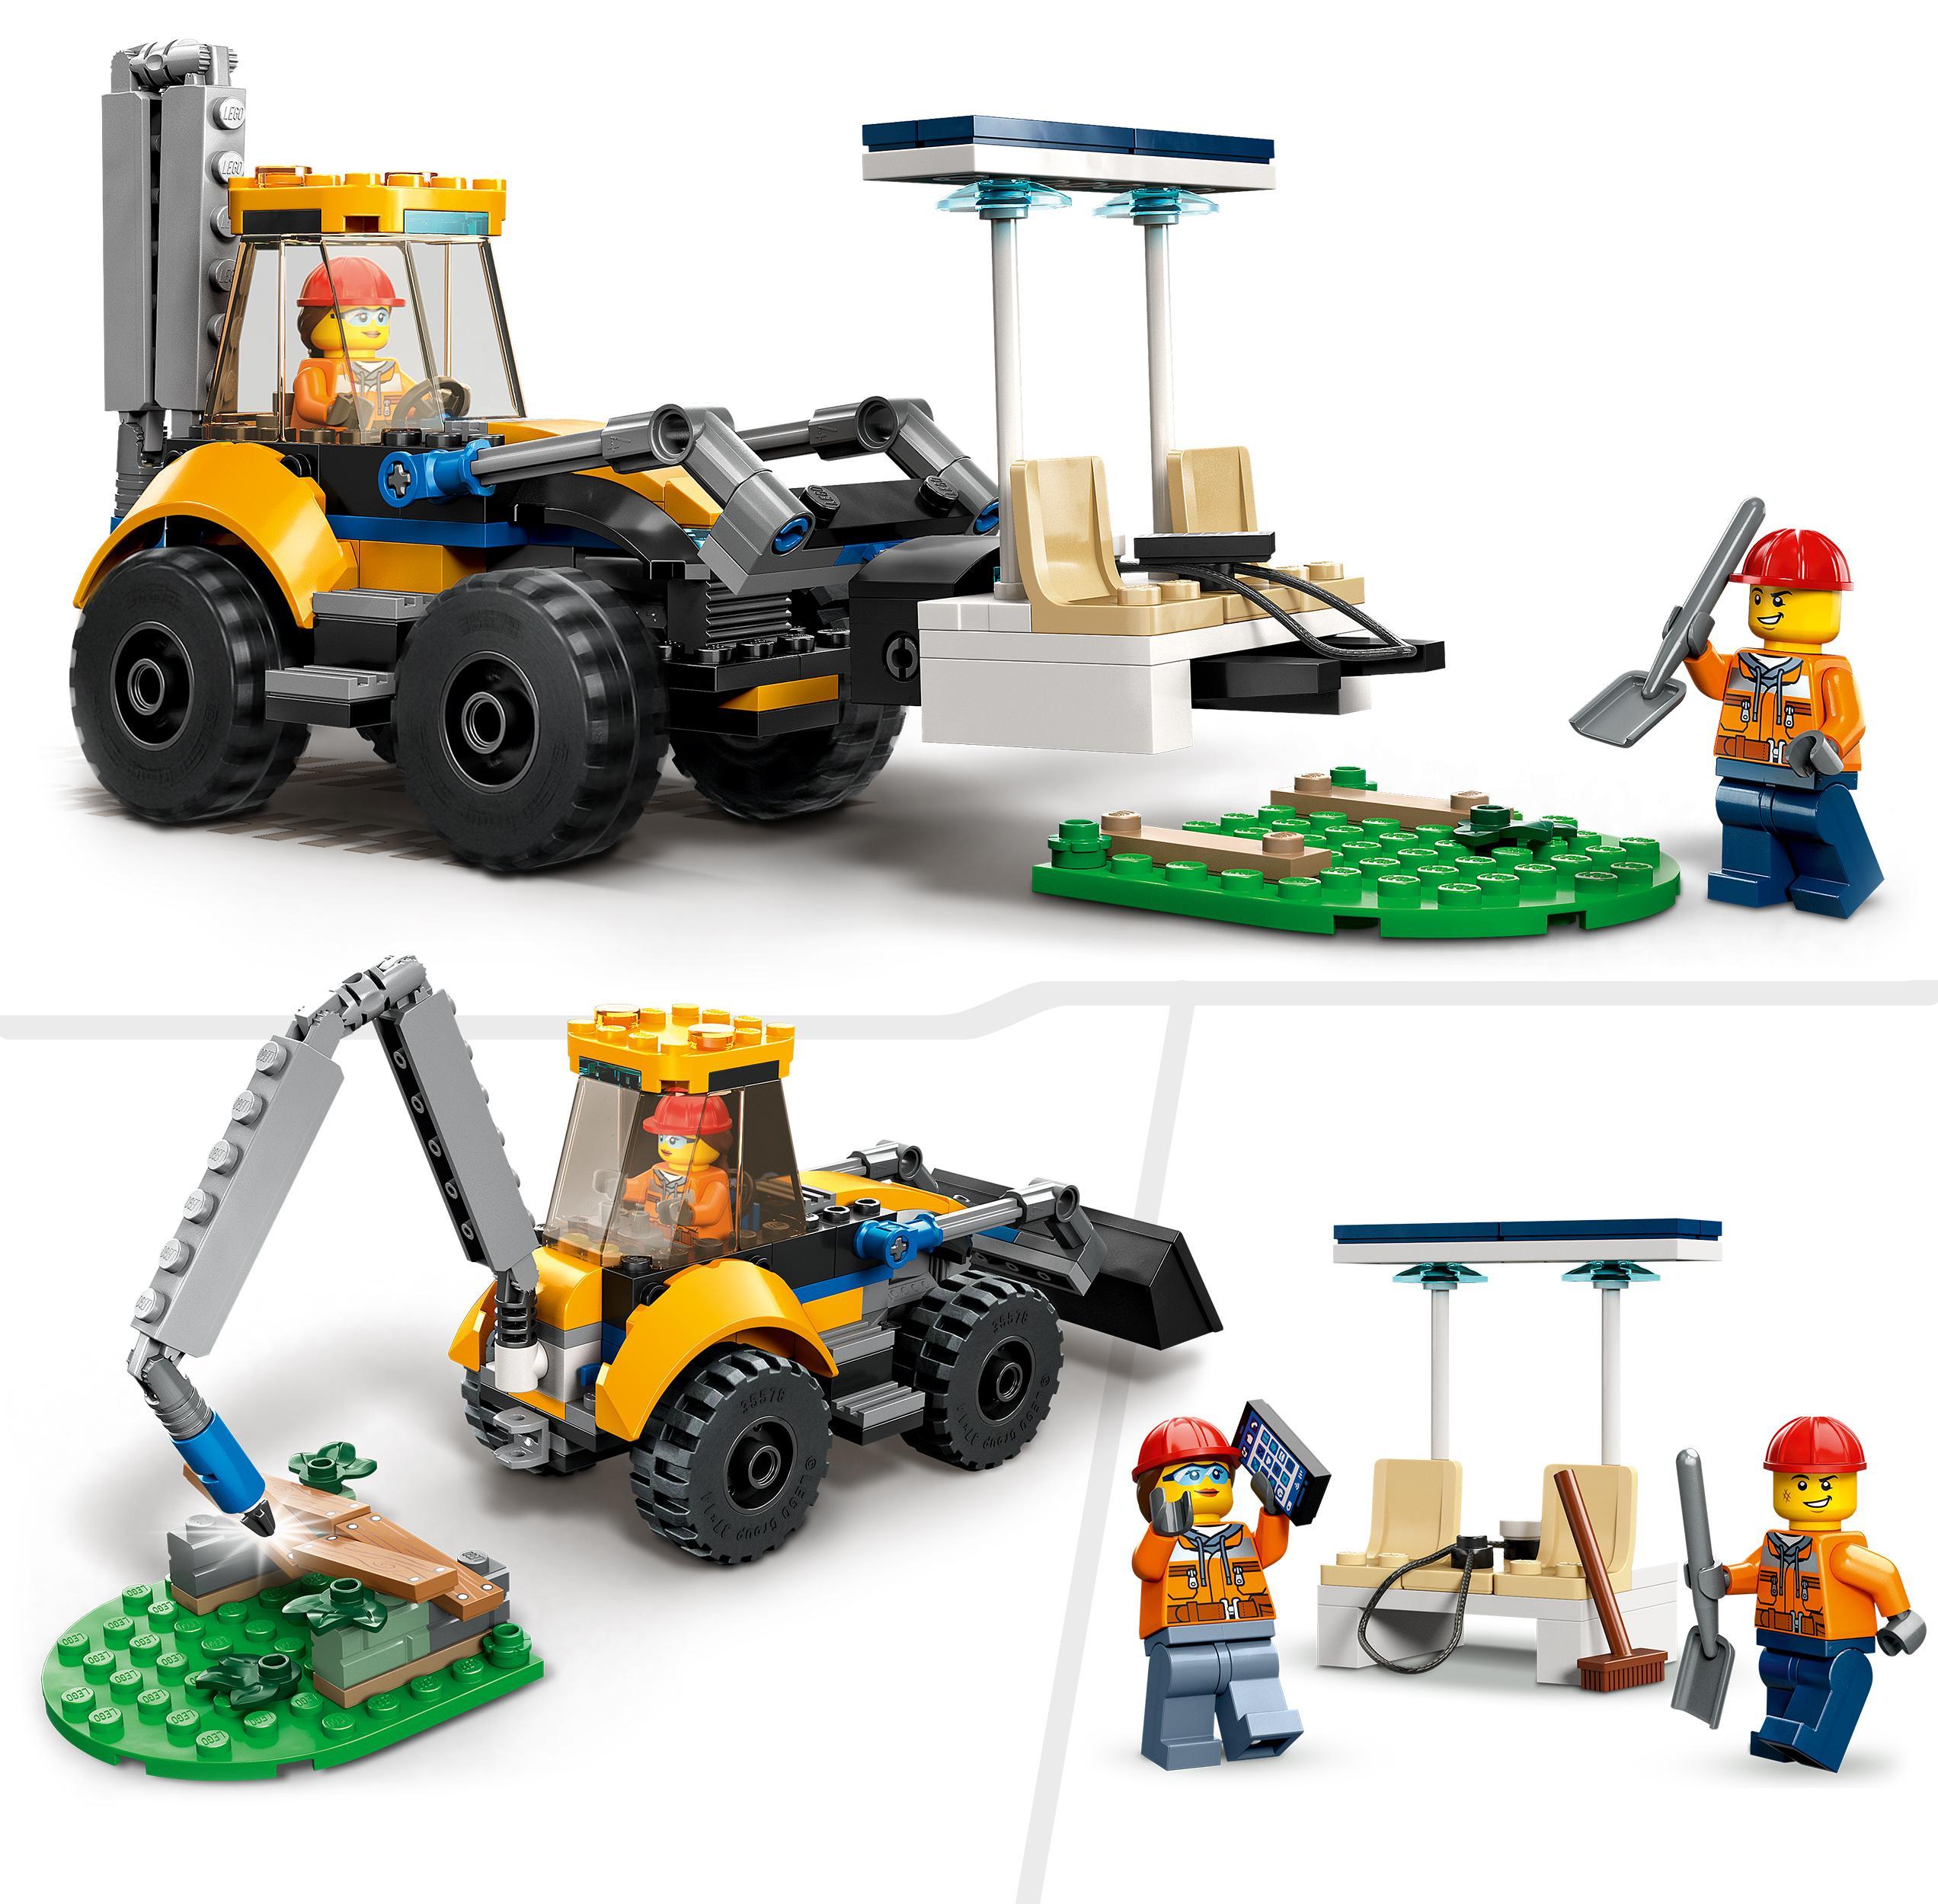 Lego city 60385 scavatrice per costruzioni, escavatore giocattolo con minifigure, giochi per bambini e bambine, idea regalo - LEGO CITY